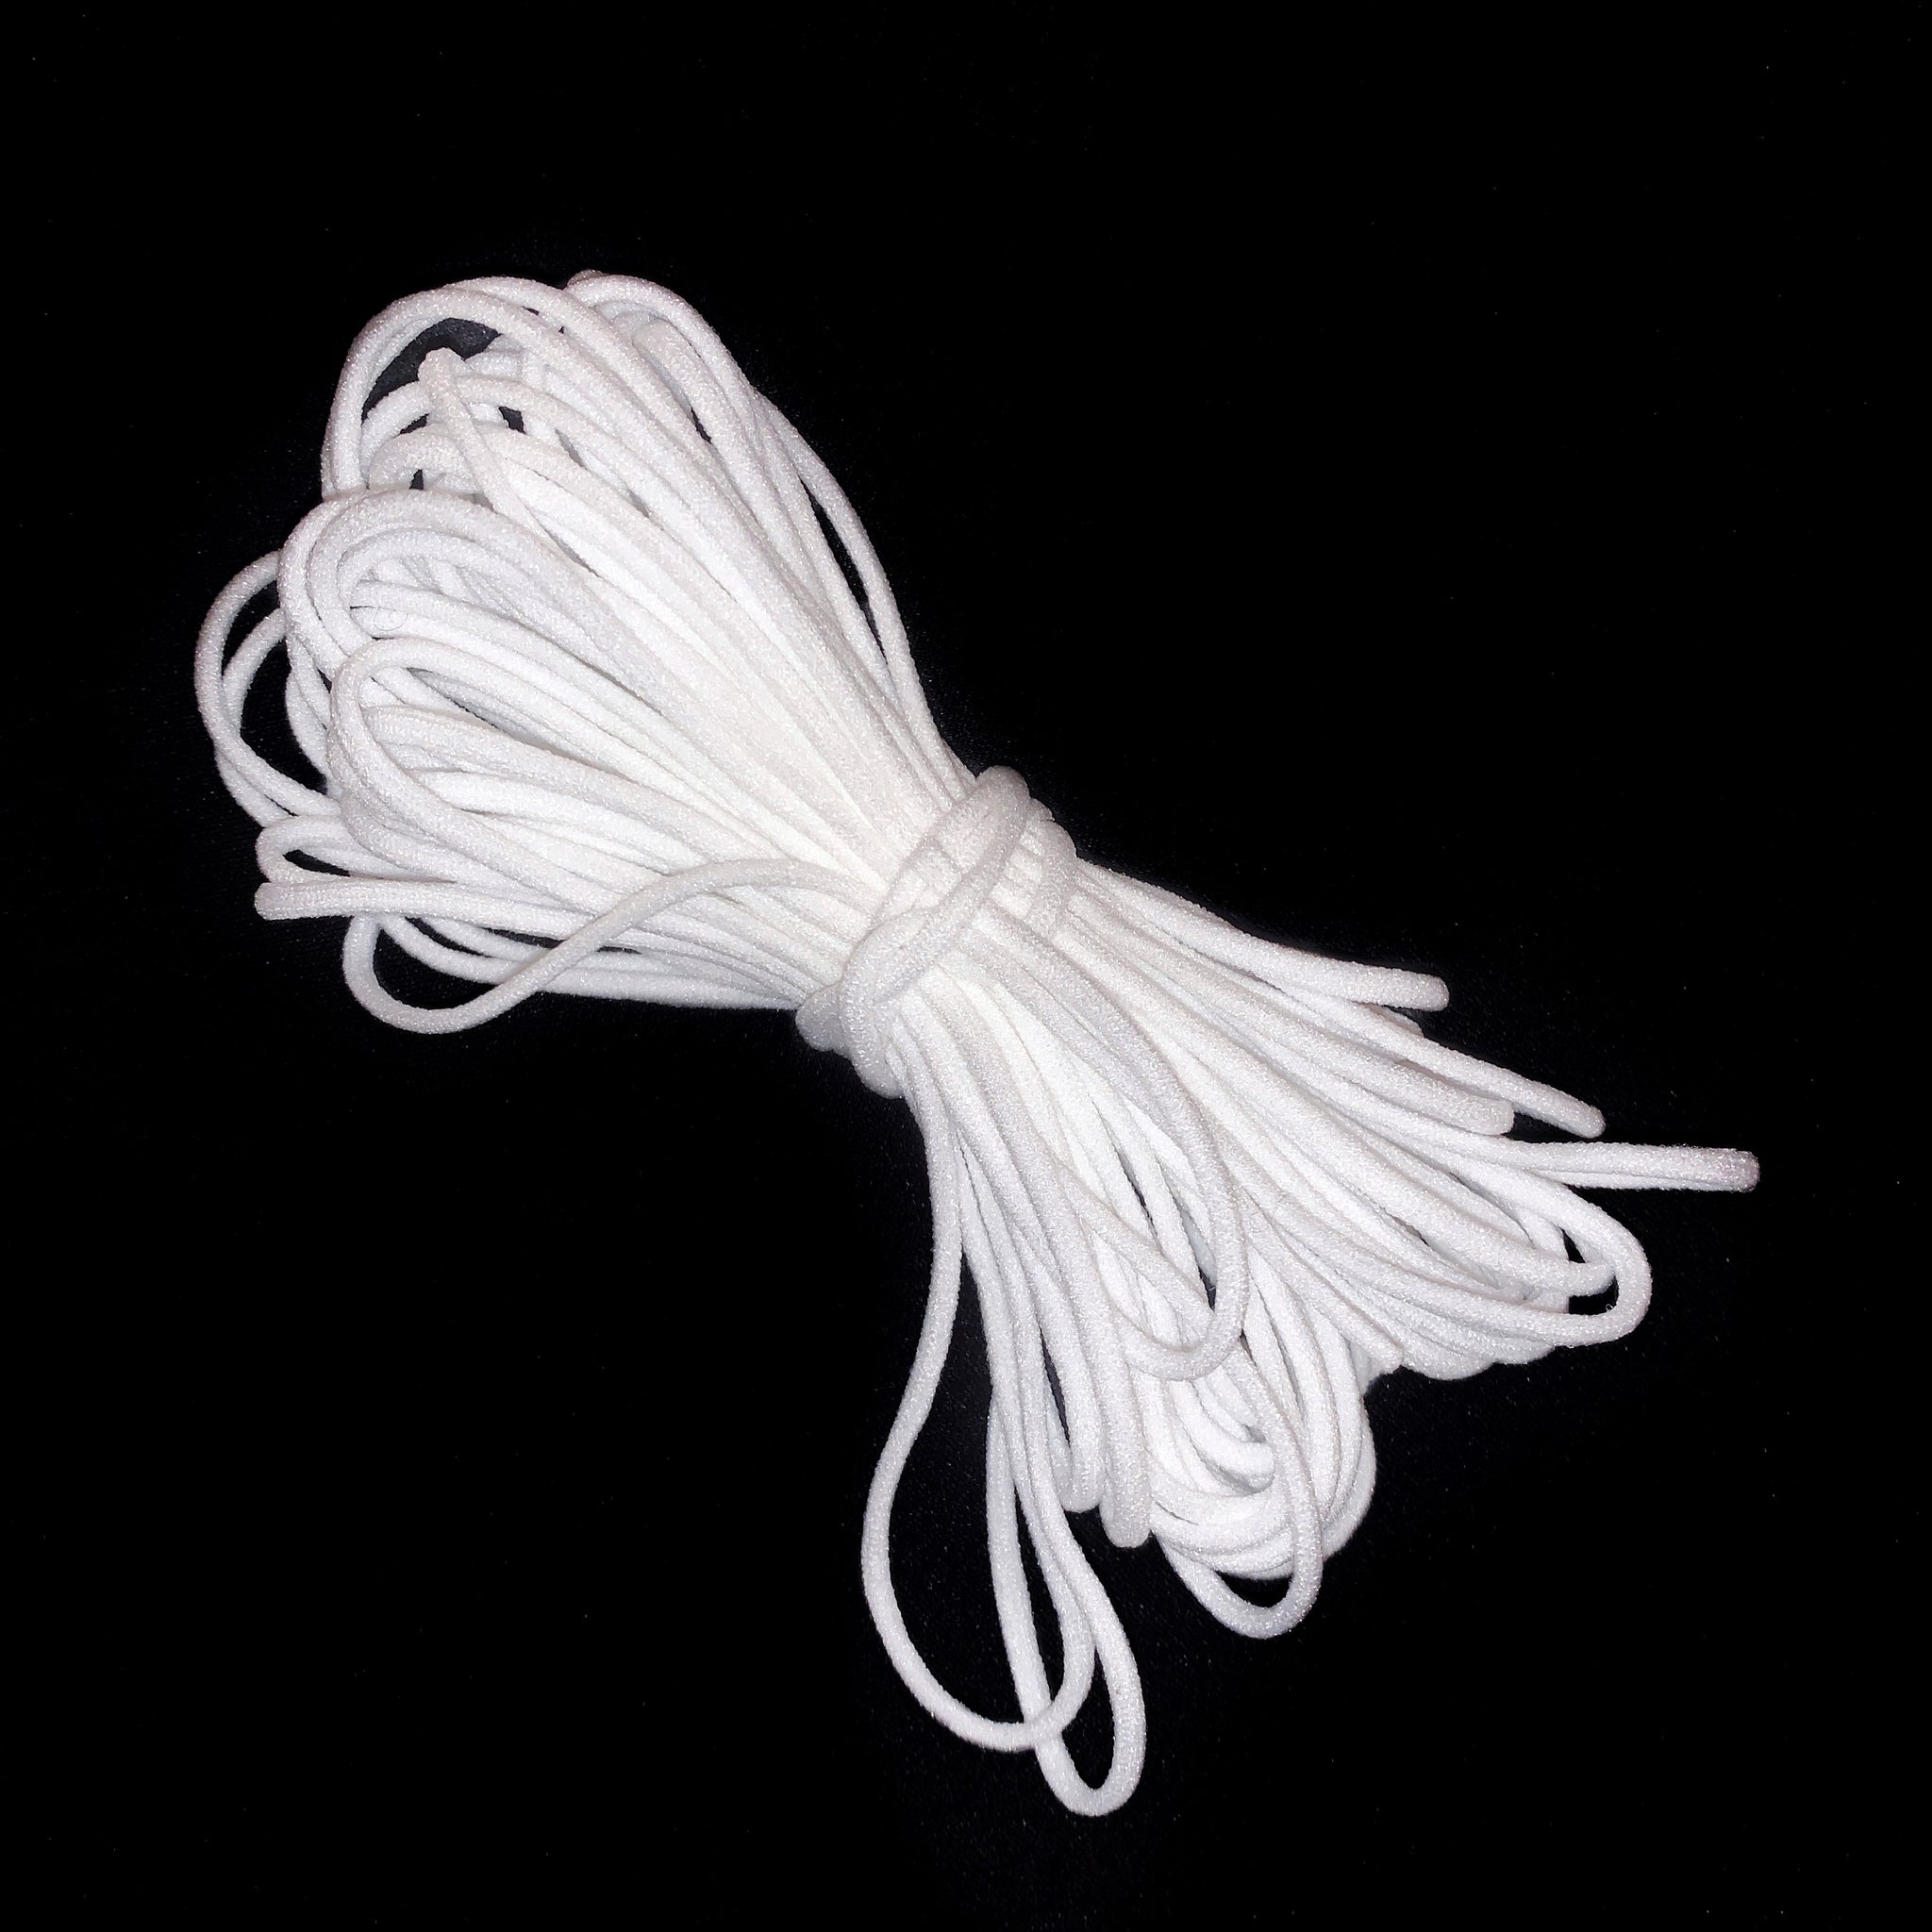 1/8" Round Stretch Nylon Cord  - White or Black -10 yards